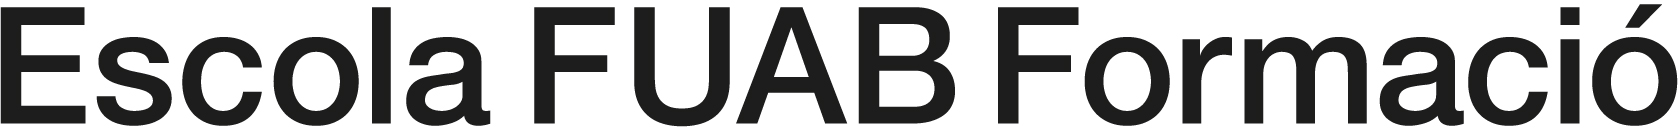 Logotip Escola FUAB Formació-1 tinta-1 línia